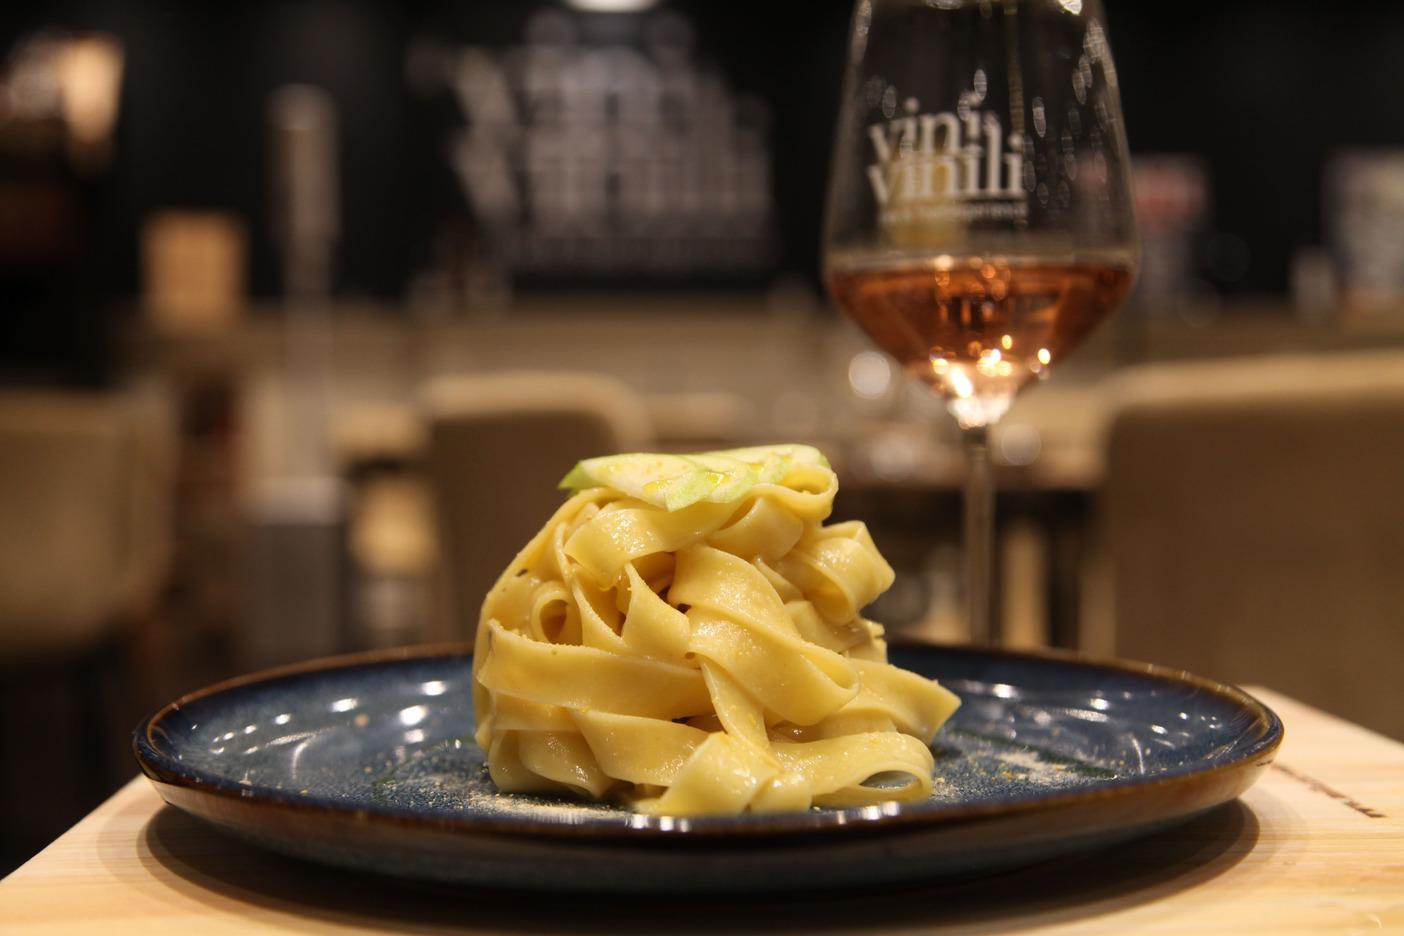 ‘Vini & Vinili’, Music and Cuisine Meet